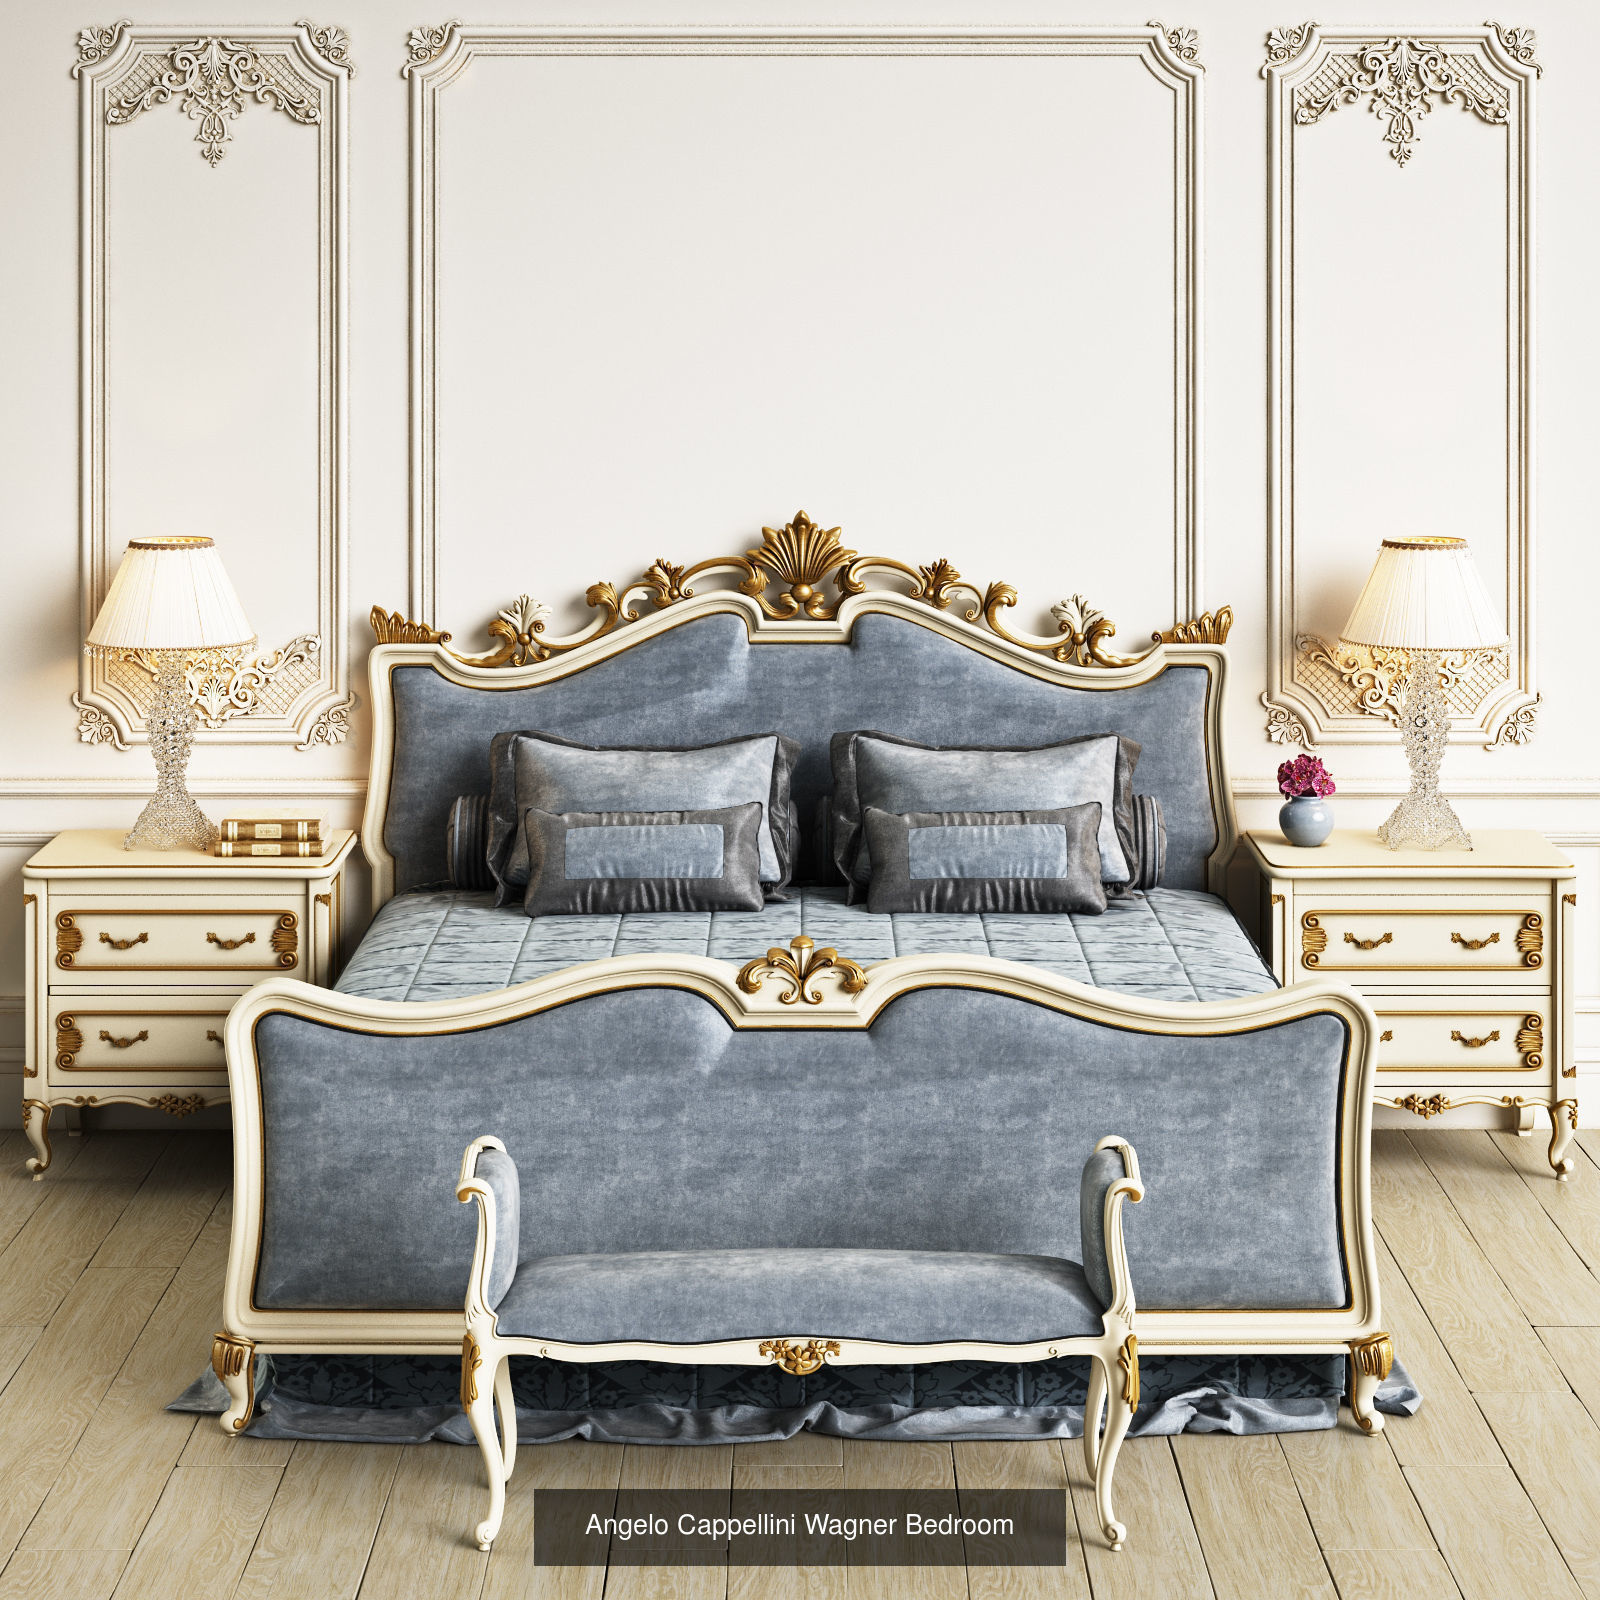 مدل سه بعدی اتاق خواب کلاسیک - 2